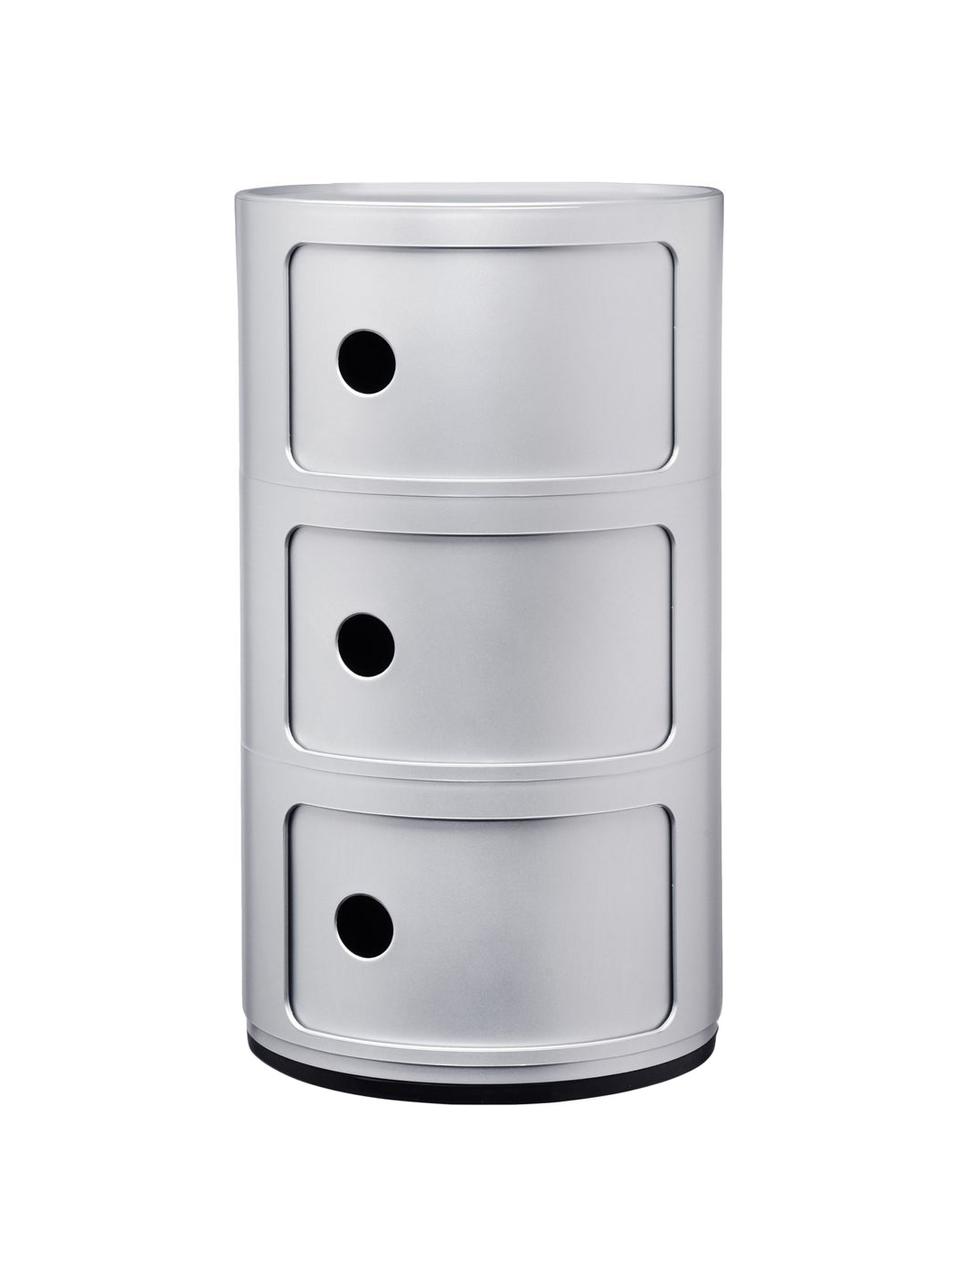 Design Container Componibili 3 Modules in Silber, Kunststoff (ABS), lackiert, Greenguard-zertifiziert, Silber, matt, Ø 32 x H 59 cm